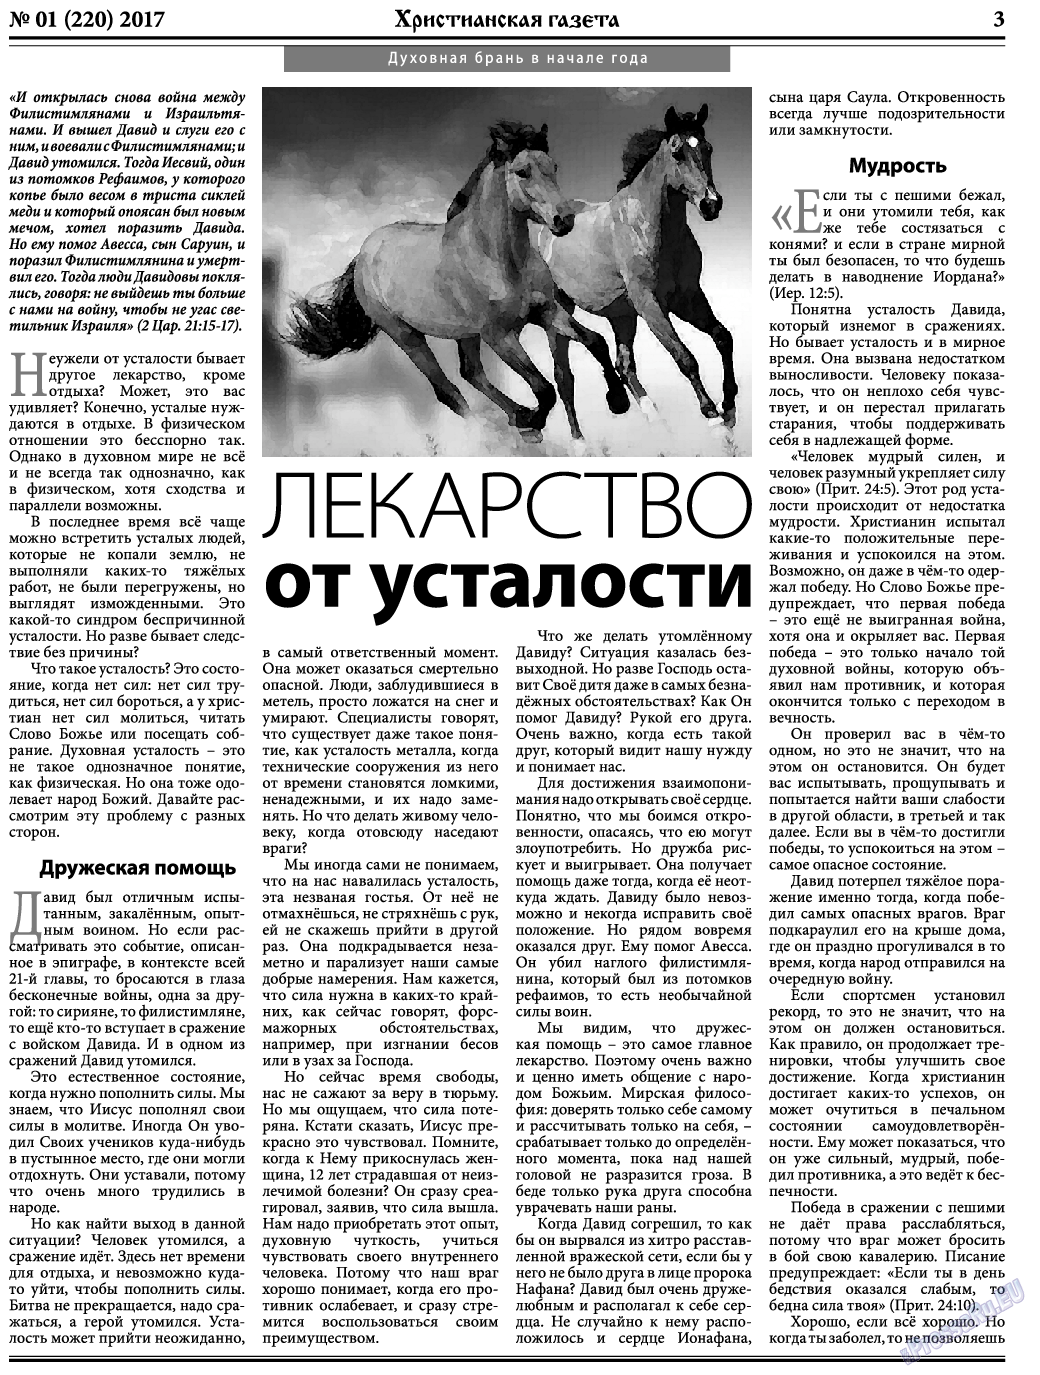 Христианская газета, газета. 2017 №1 стр.3